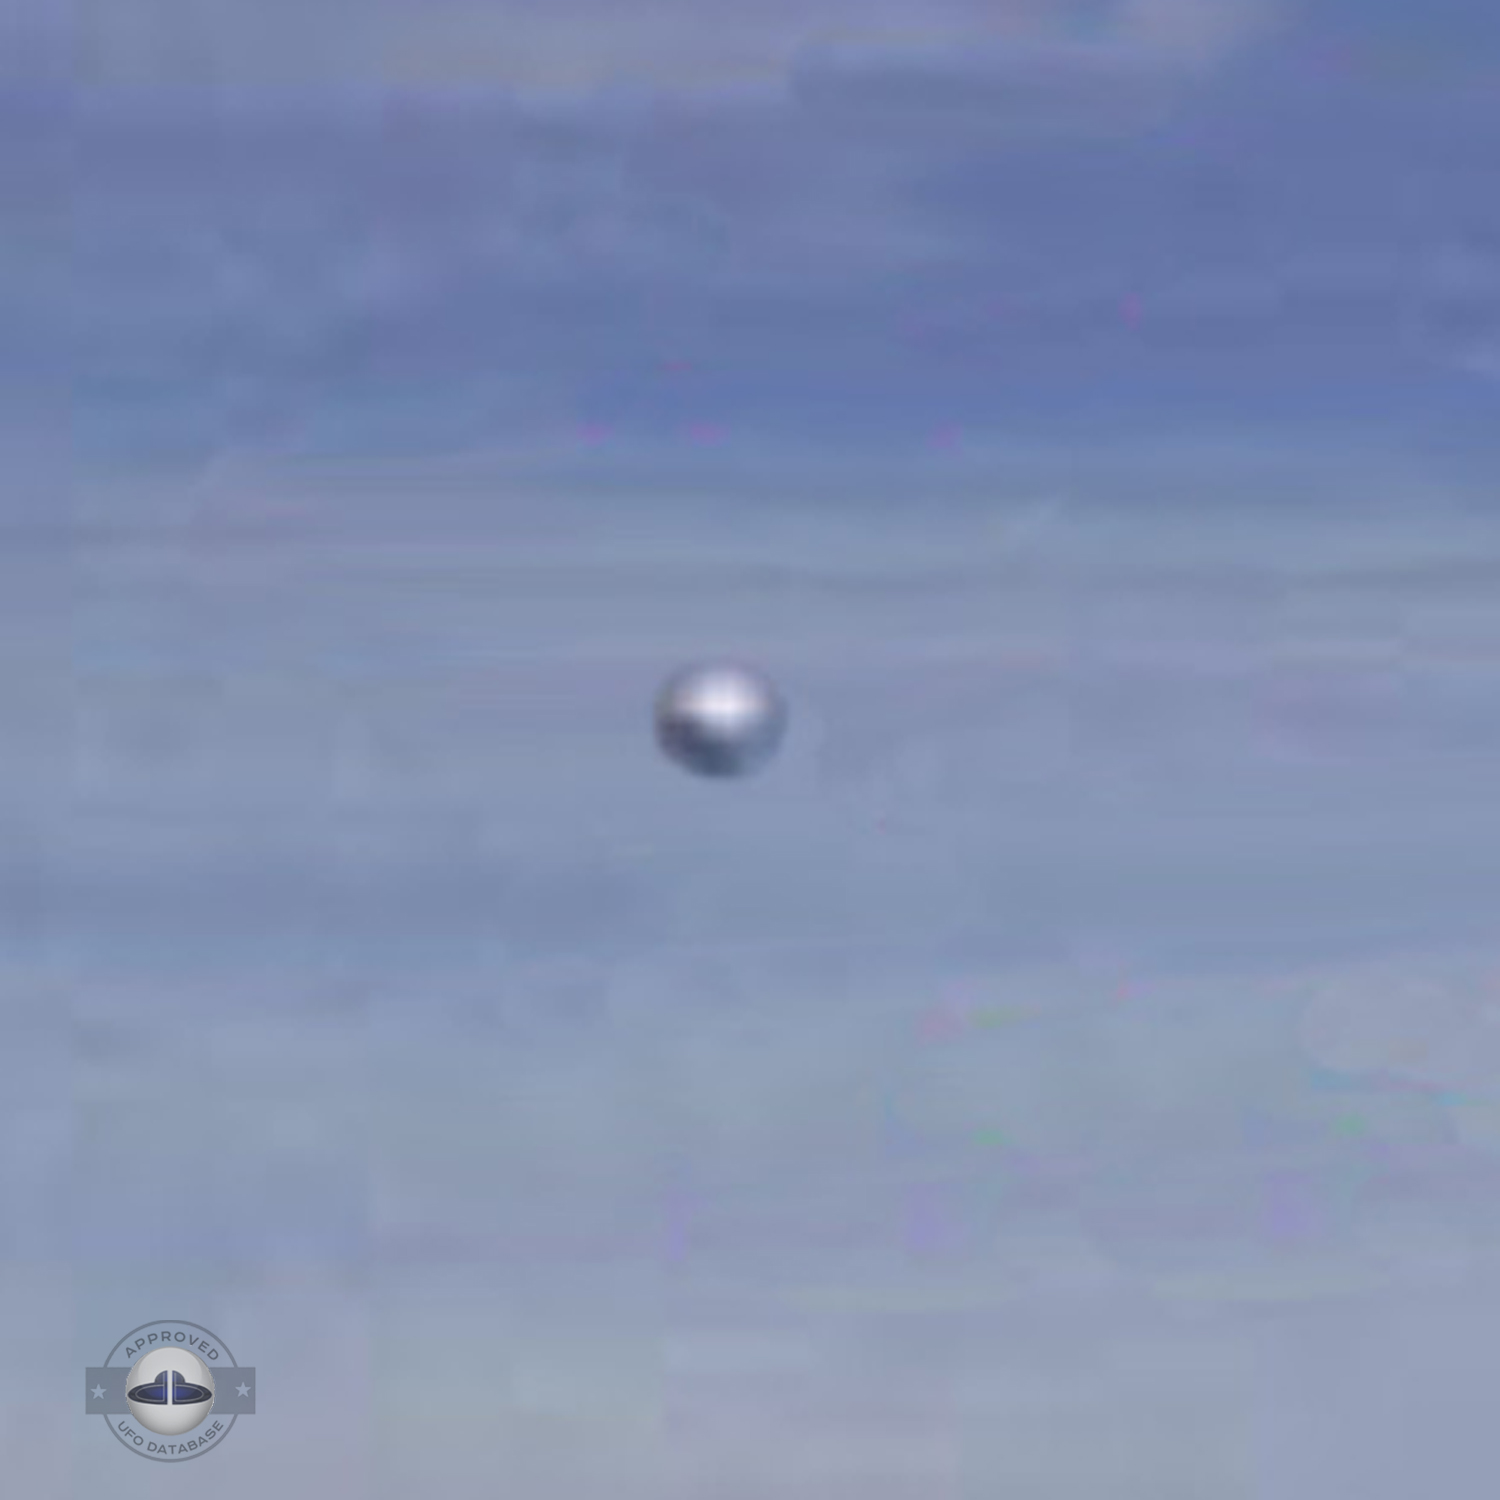 Silver metallic UFO probe in the desert of Chile | Iquique April 2010 UFO Picture #221-4